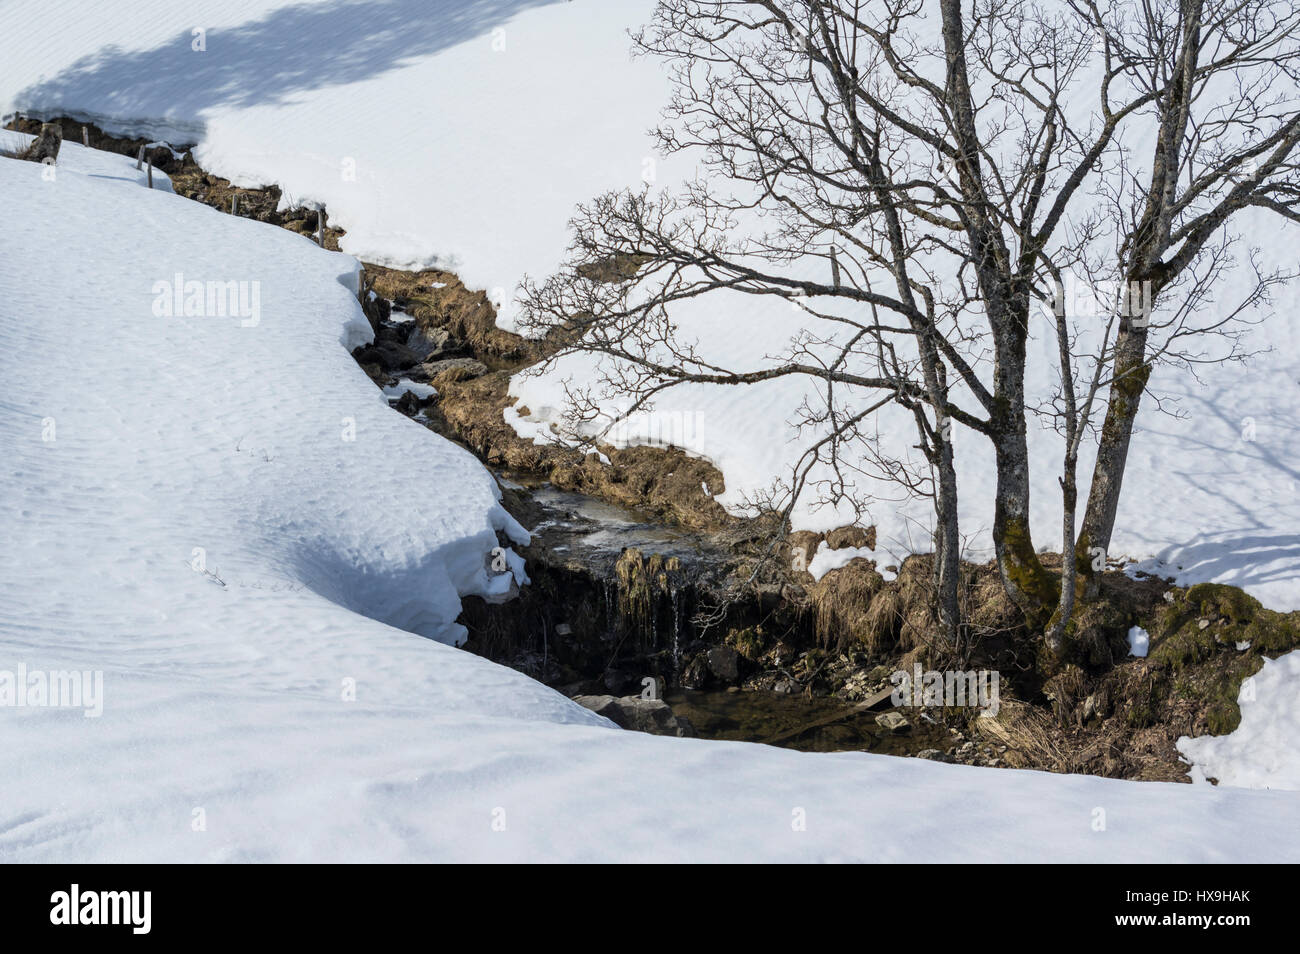 Paysage d'hiver sur une journée ensoleillée. Petit ruisseau bordé par les arbres feuillus entourée de prairies couvertes de neige. La Suisse centrale. Banque D'Images